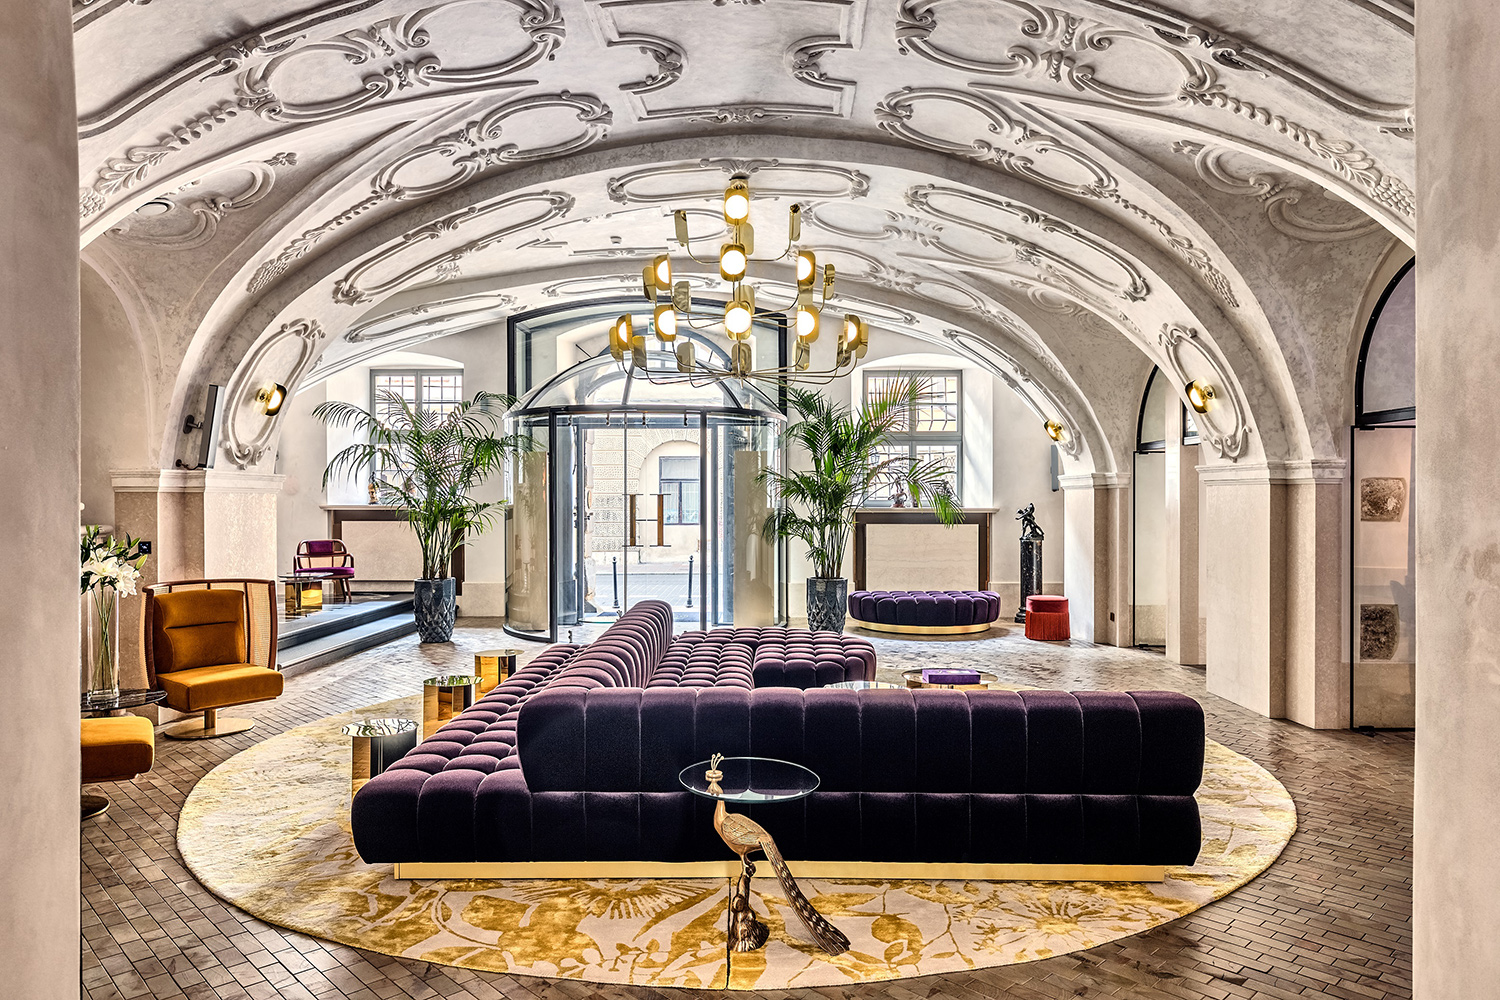 Der »Lubomirski Palace« in Krakau wurde im Juni 2020 unter dem Namen »H15 Luxury Palace« als Hotel eröffnet. © Marriott International